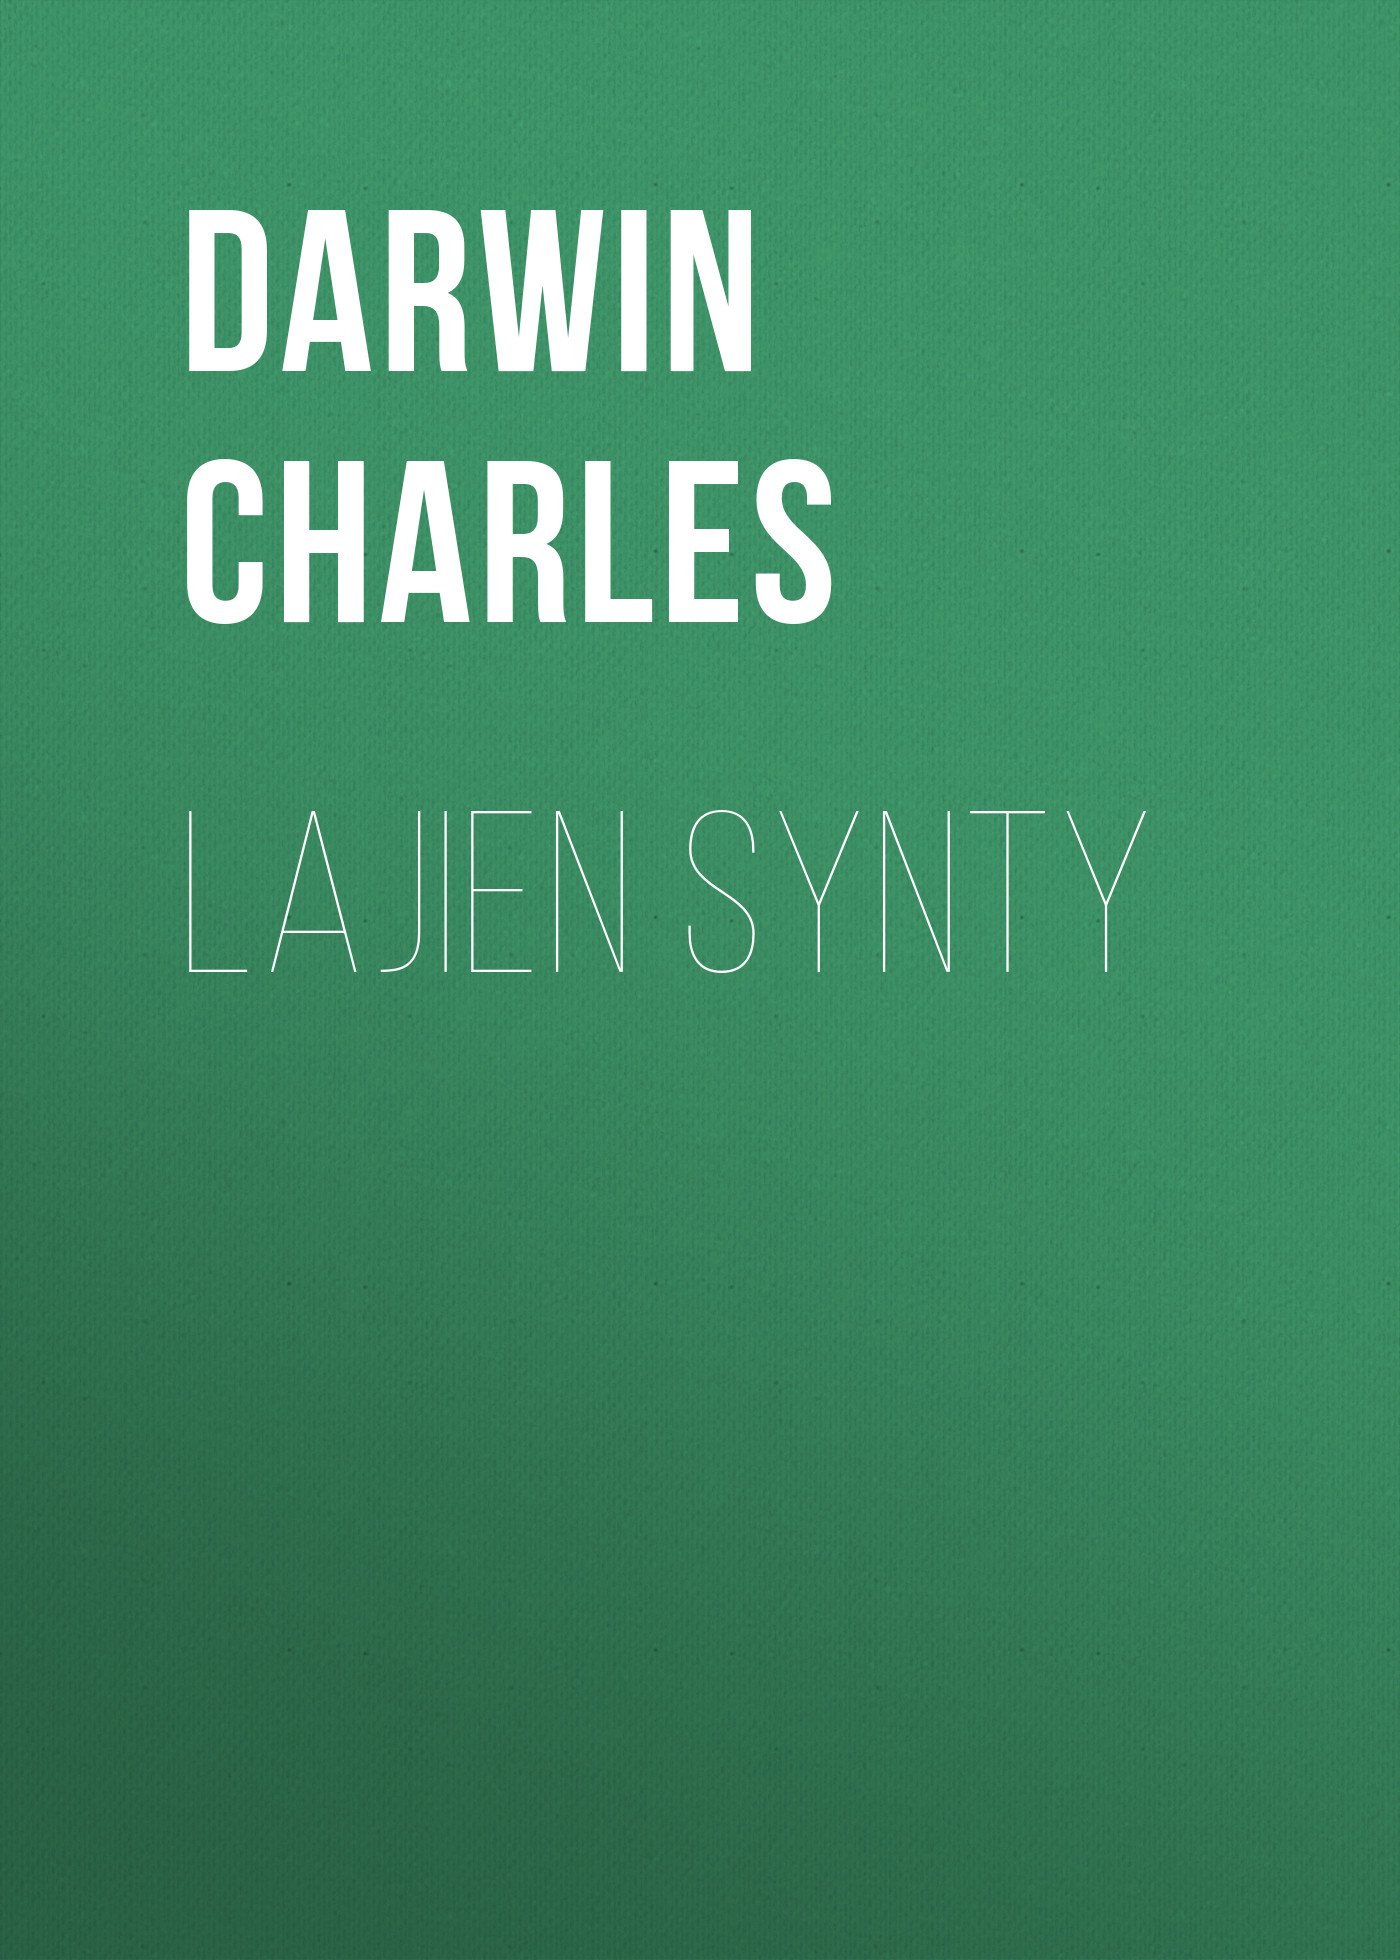 Книга Lajien synty из серии , созданная Charles Darwin, может относится к жанру Зарубежная старинная литература, Зарубежная классика. Стоимость электронной книги Lajien synty с идентификатором 25092748 составляет 0 руб.